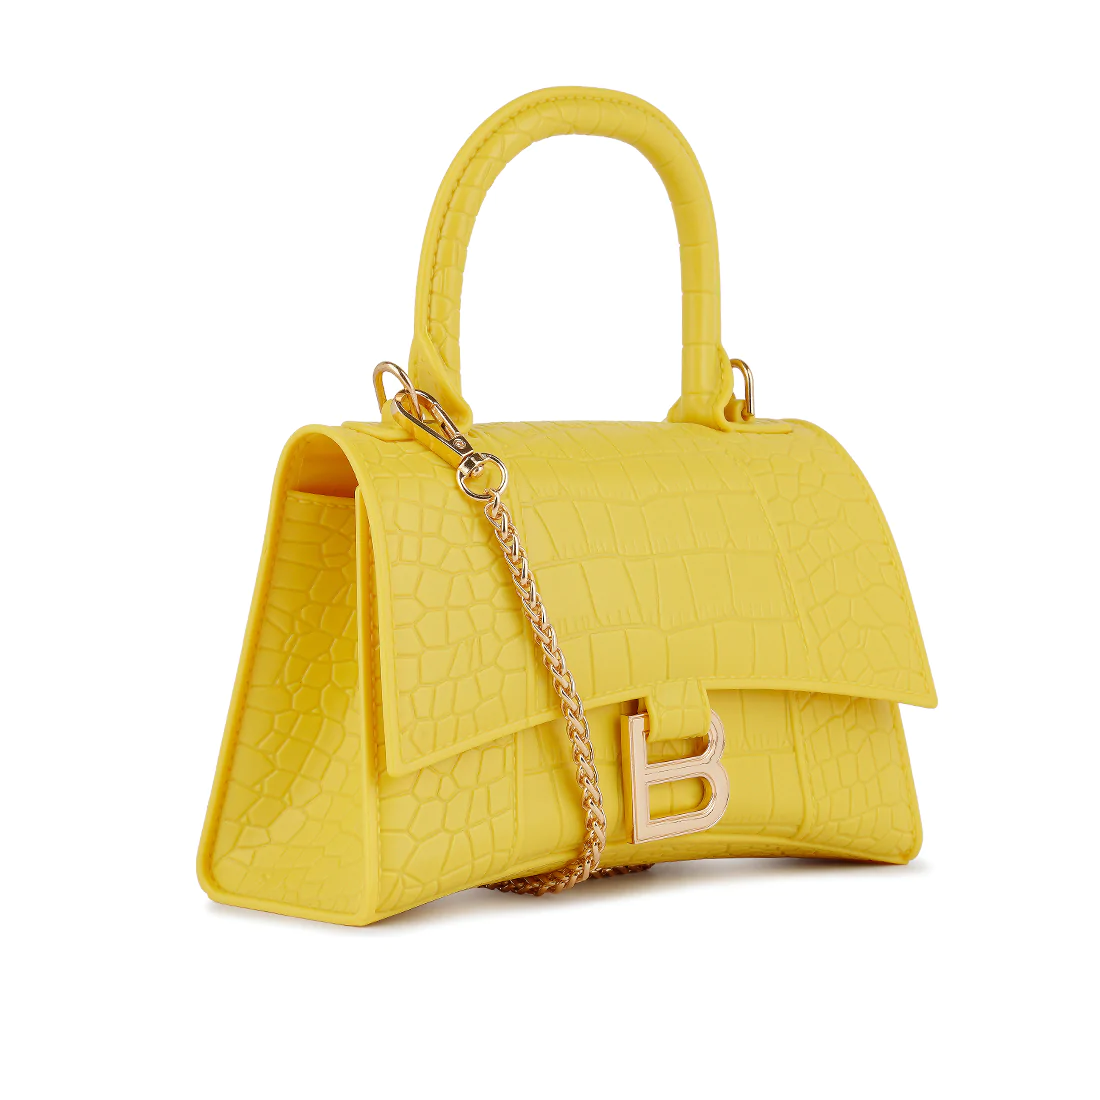 กระเป๋าถือขนาดเล็กที่มีพื้นผิวของ Croc เป็นสีเหลือง